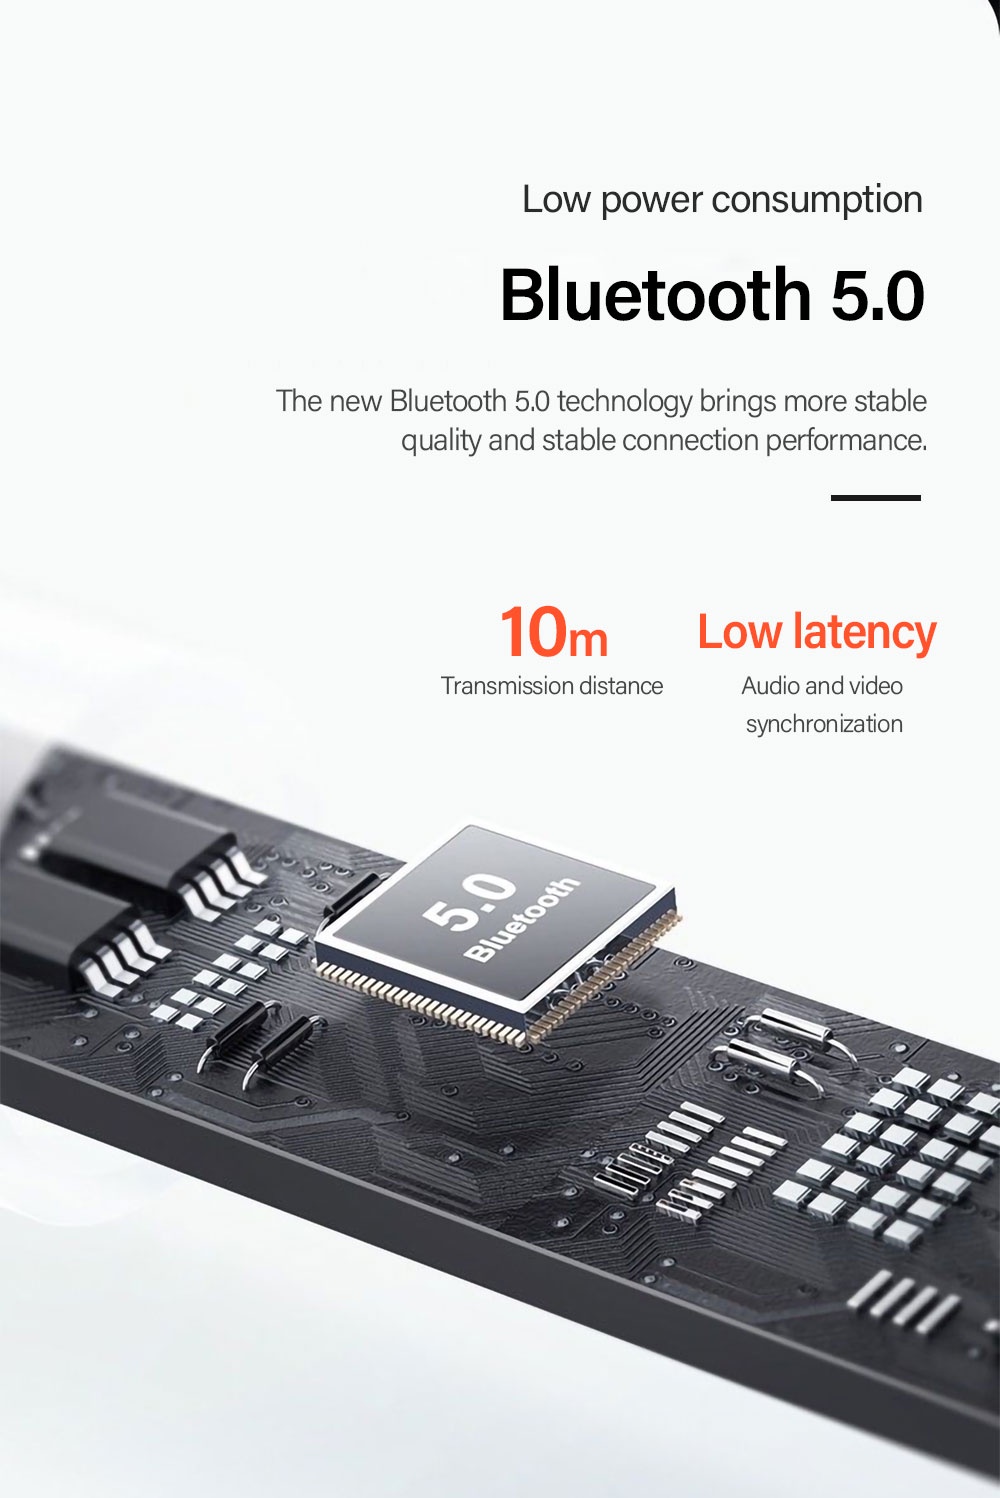 รูปภาพเพิ่มเติมเกี่ยวกับ Lenovo LP5 TWS หูฟังบลูทูธไร้สาย พร้อมไมโครโฟน 9D สเตอริโอ IPX5 กันน้ำ สําหรับ IOS Androids